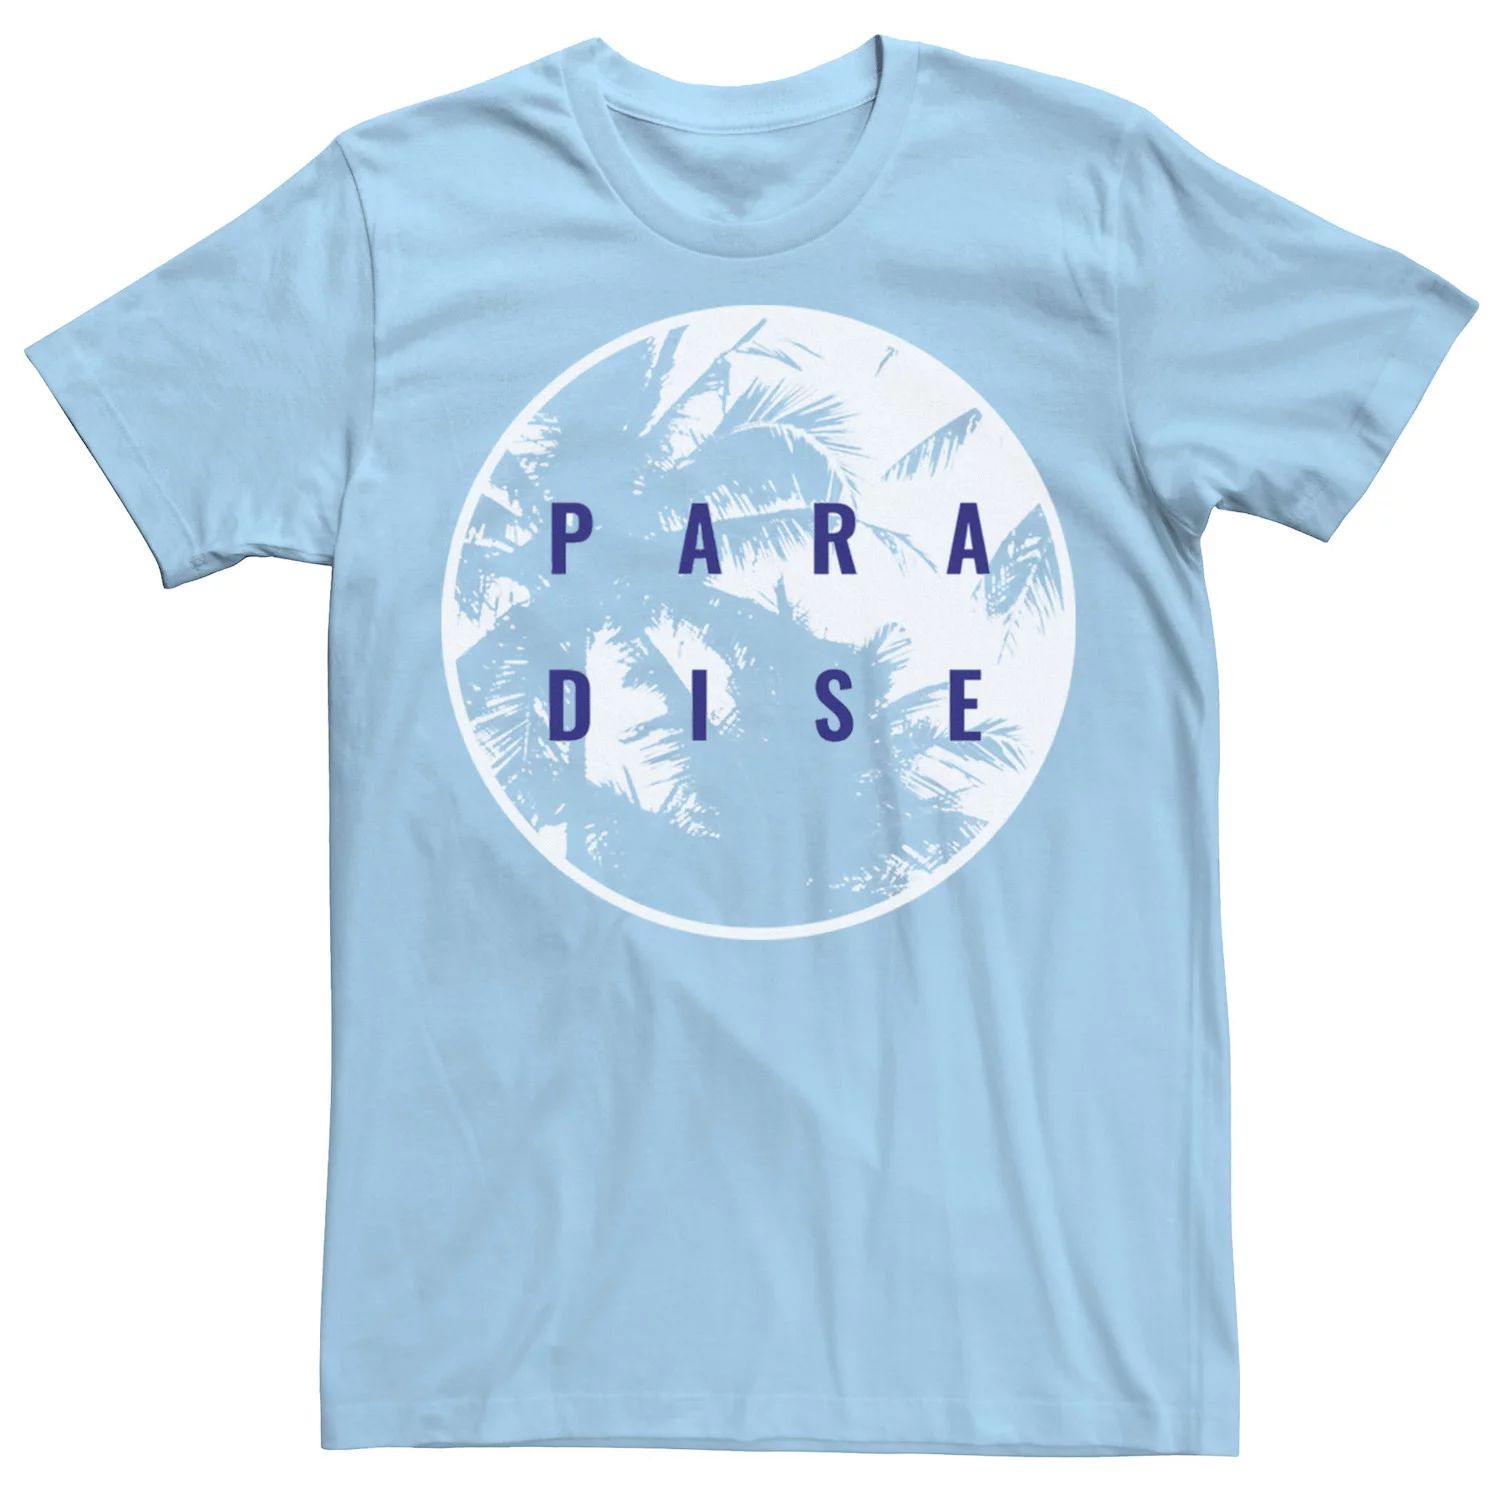 Мужская футболка с круглым плакатом и рисунком Paradise Palm Tree Licensed Character